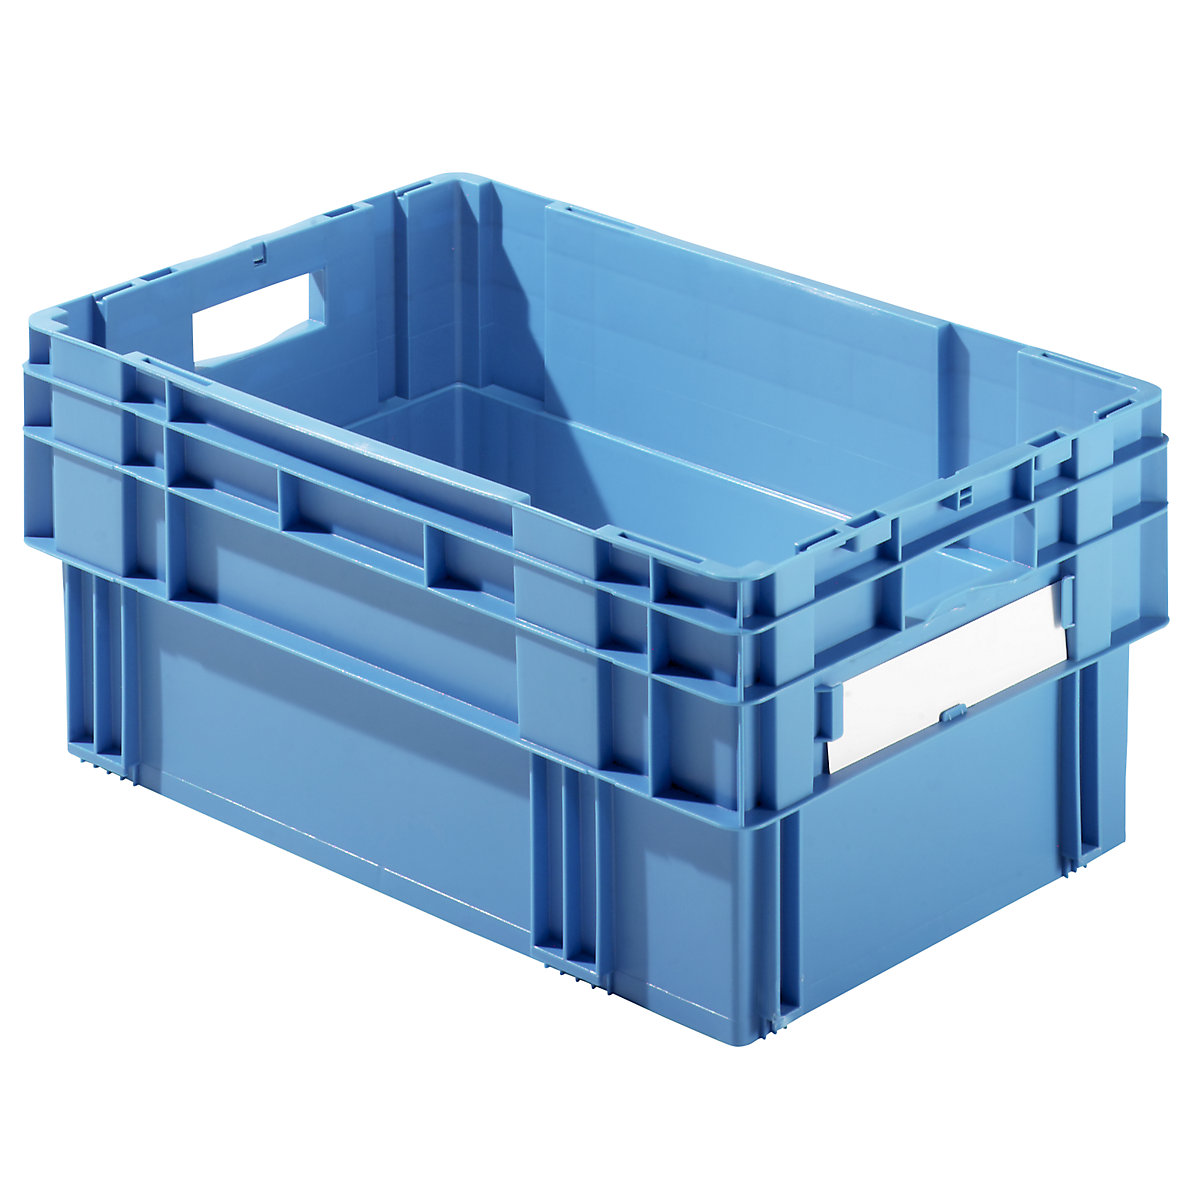 Kutija za slaganje, volumen 49 l, zatvorene stijenke i dno, pak. 4 kom., u plavoj boji